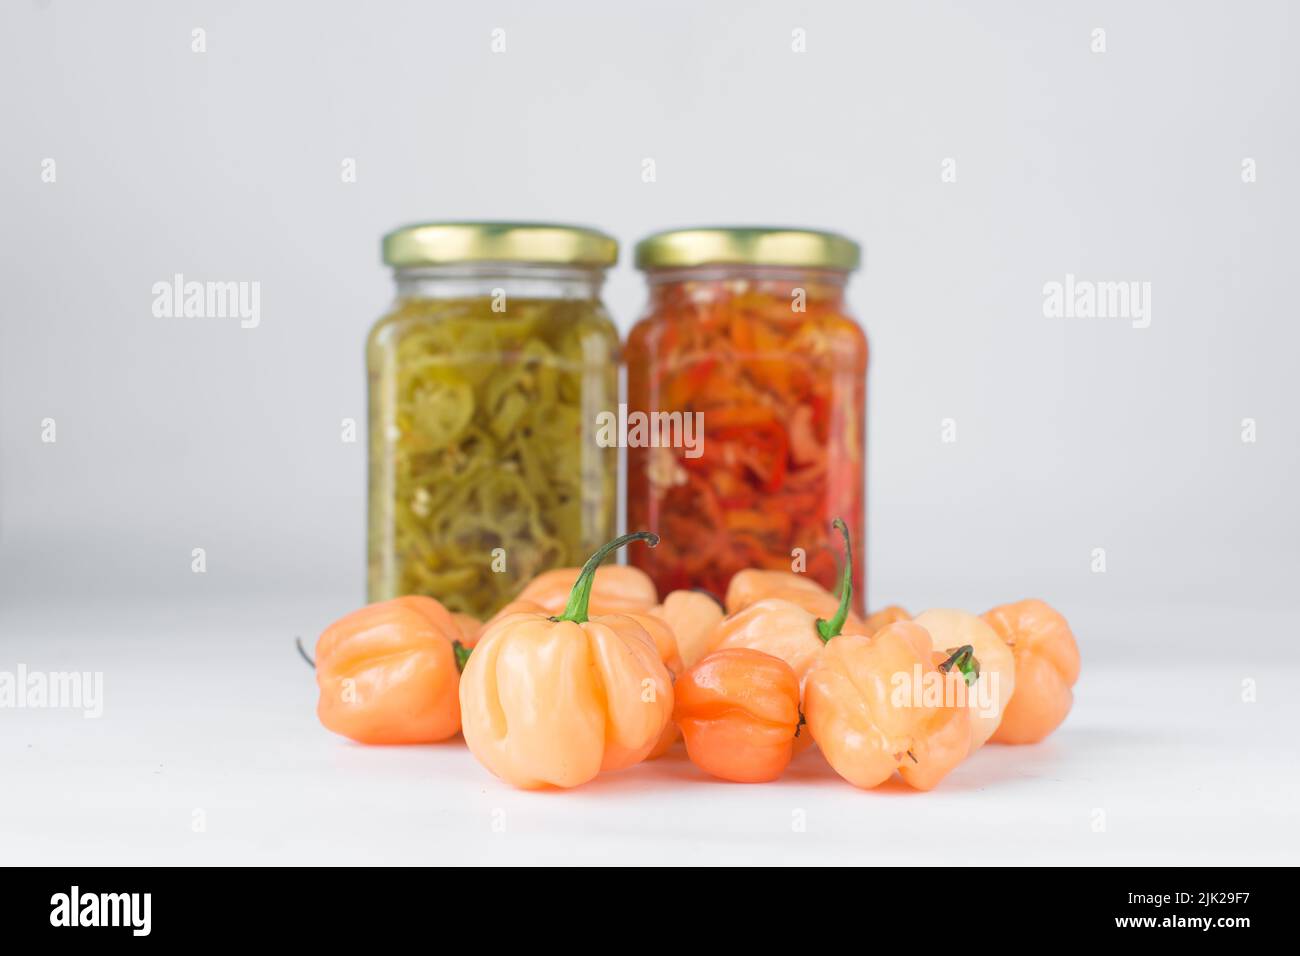 A scotch bonnet pepper with stem on a white background, fresh pepper, orange coral pepper, Nigerian scotch bonnet pepper Stock Photo